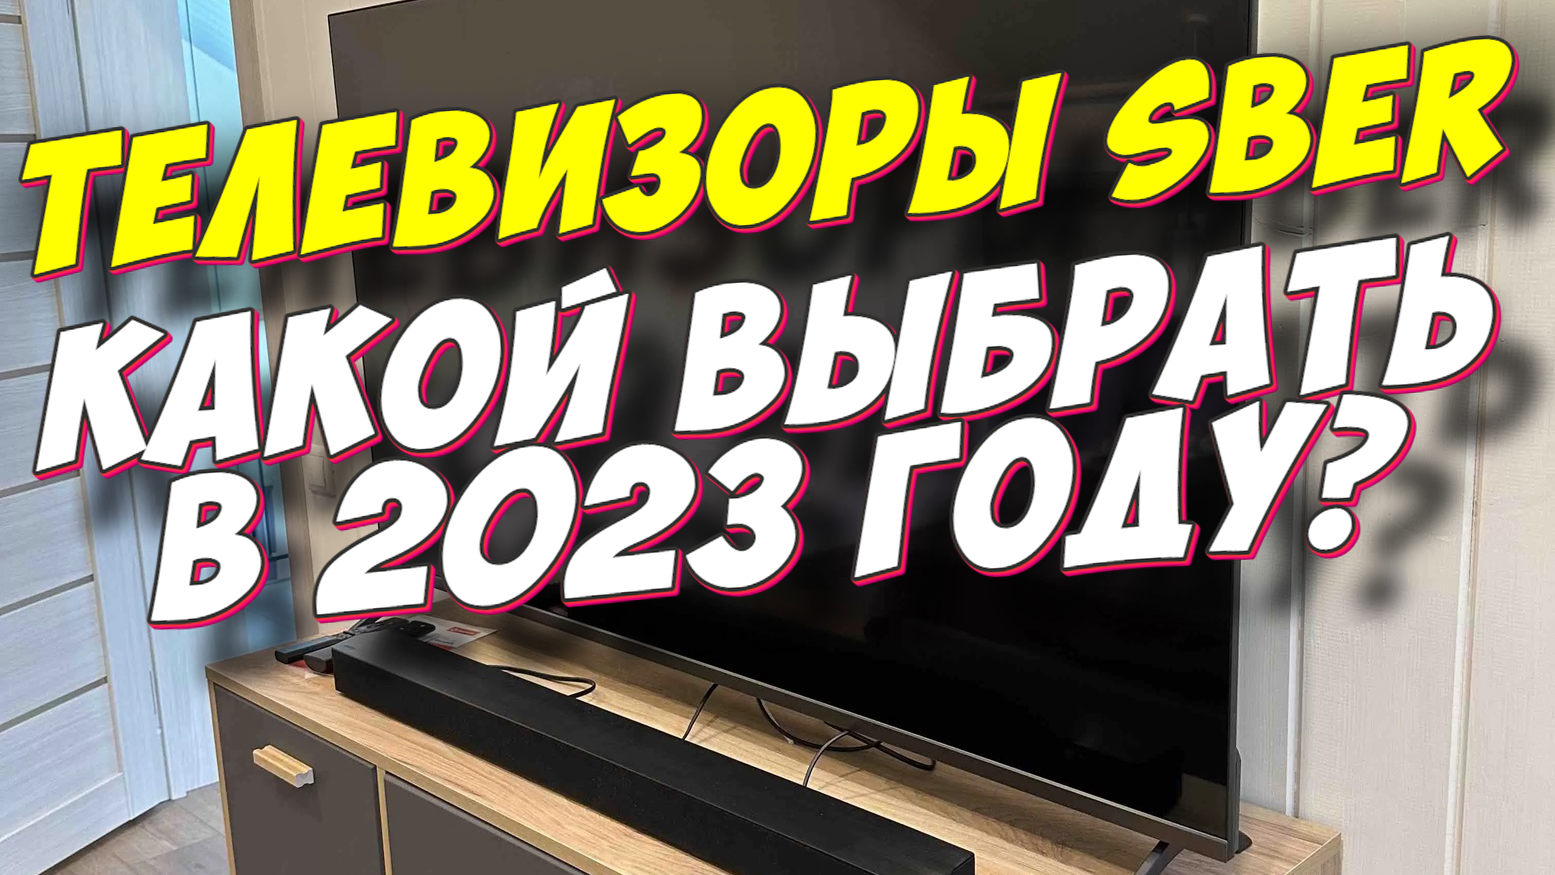 Телевизор sber 55uq5230t. Sdx-55uq5230t. Телевизор Сбер sdx-32h2122b. Sdx-50uq5230t обзор.